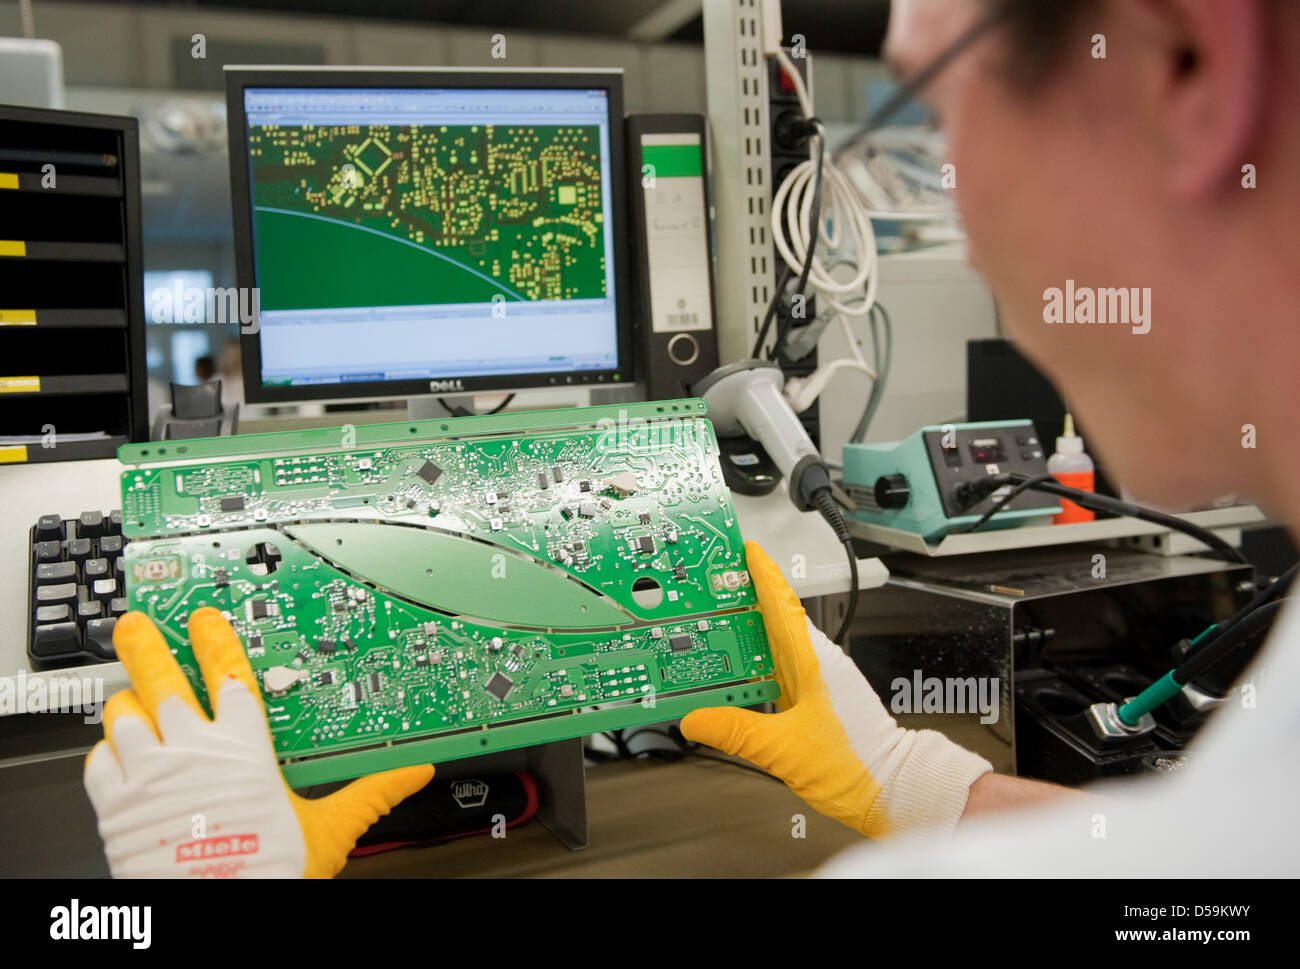 Un employé de la société d'électroménager allemand examine un Miele Miele  en circuit électronique du ministère à Gütersloh, Allemagne, 25 juin 2010.  Lors d'une conférence de presse, l'entreprise familiale a annoncé une